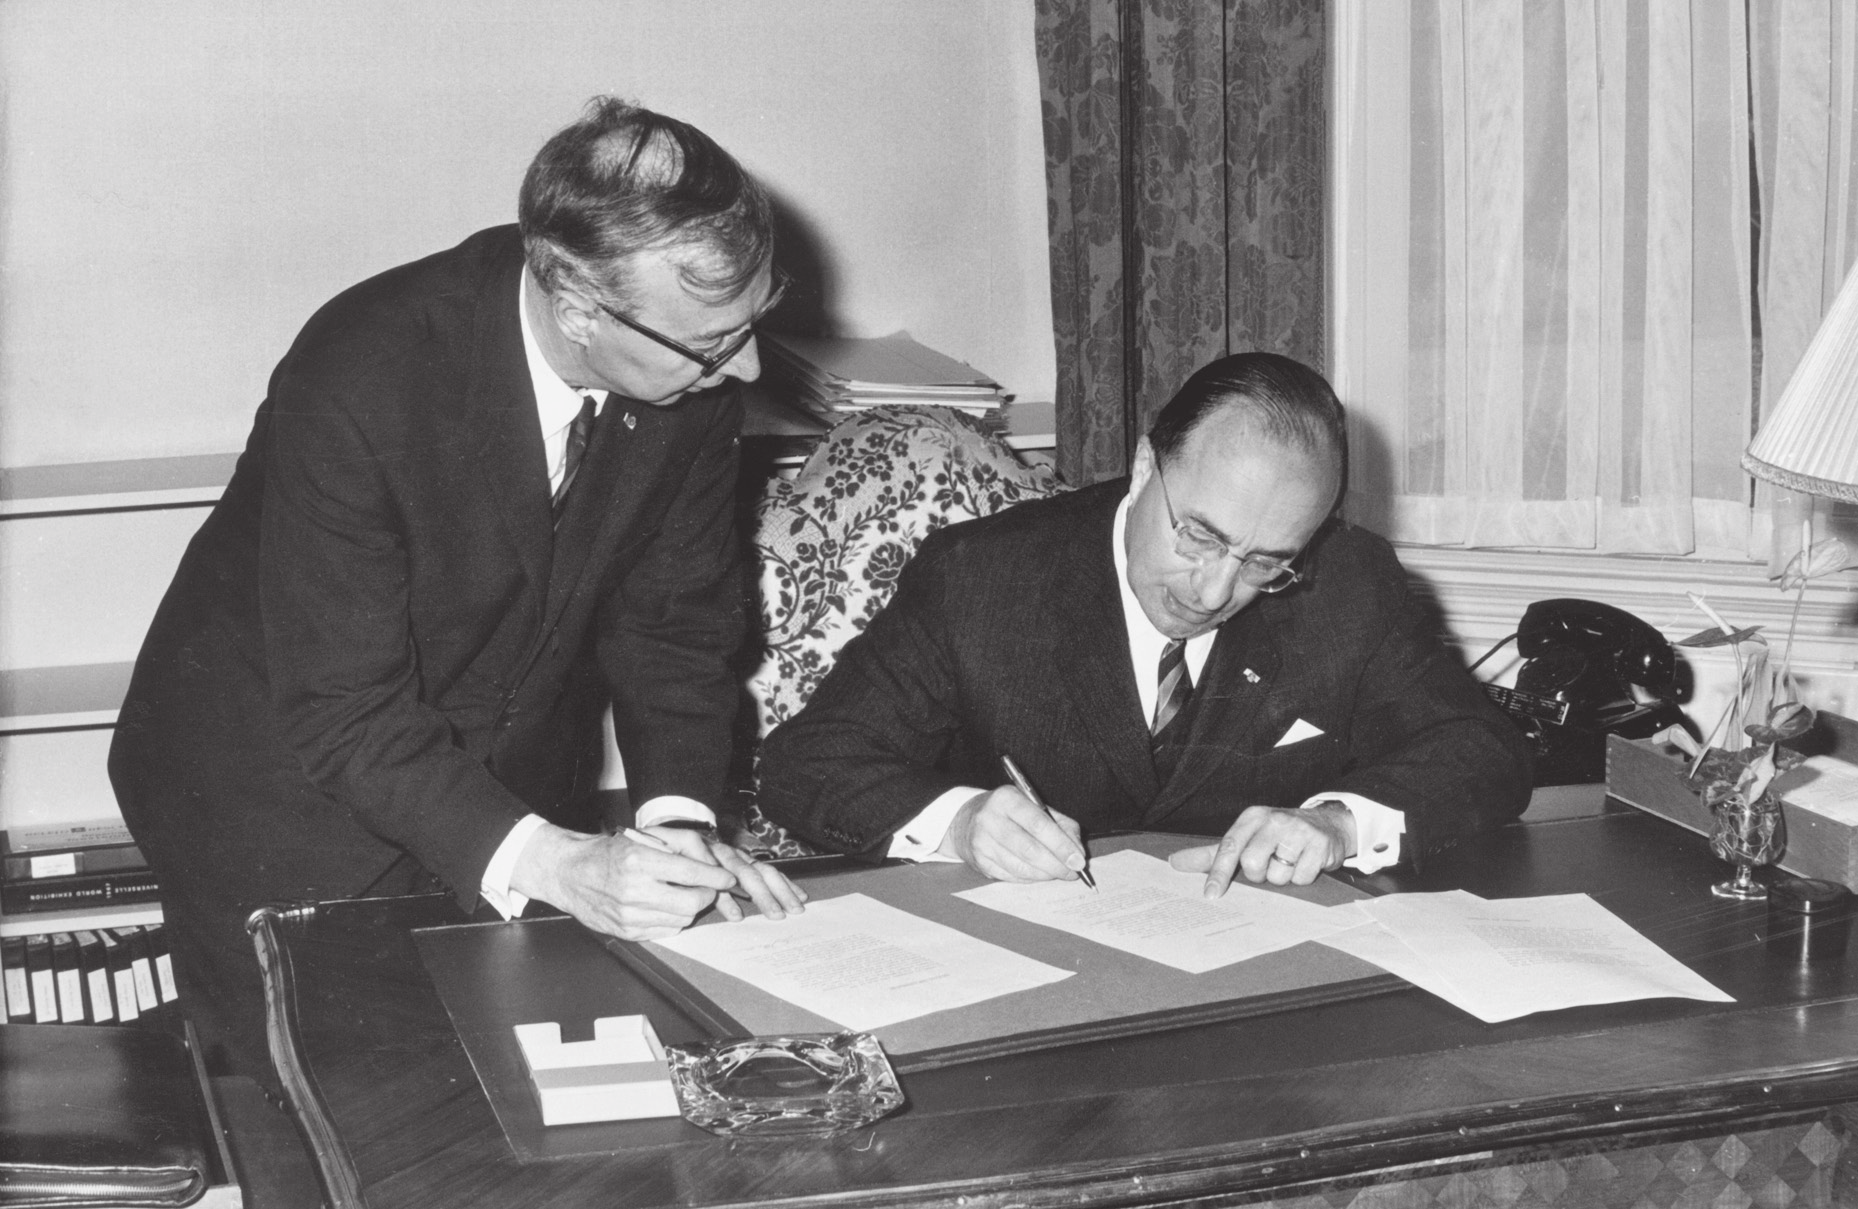 260 stap 48 Oud-premier Cals tekent de overdracht van het ministerie van Algemene Zaken aan zijn opvolger Zijlstra, november 1966. [Spaarnestad] rijnen, met een korte plechtigheid alwaar v.